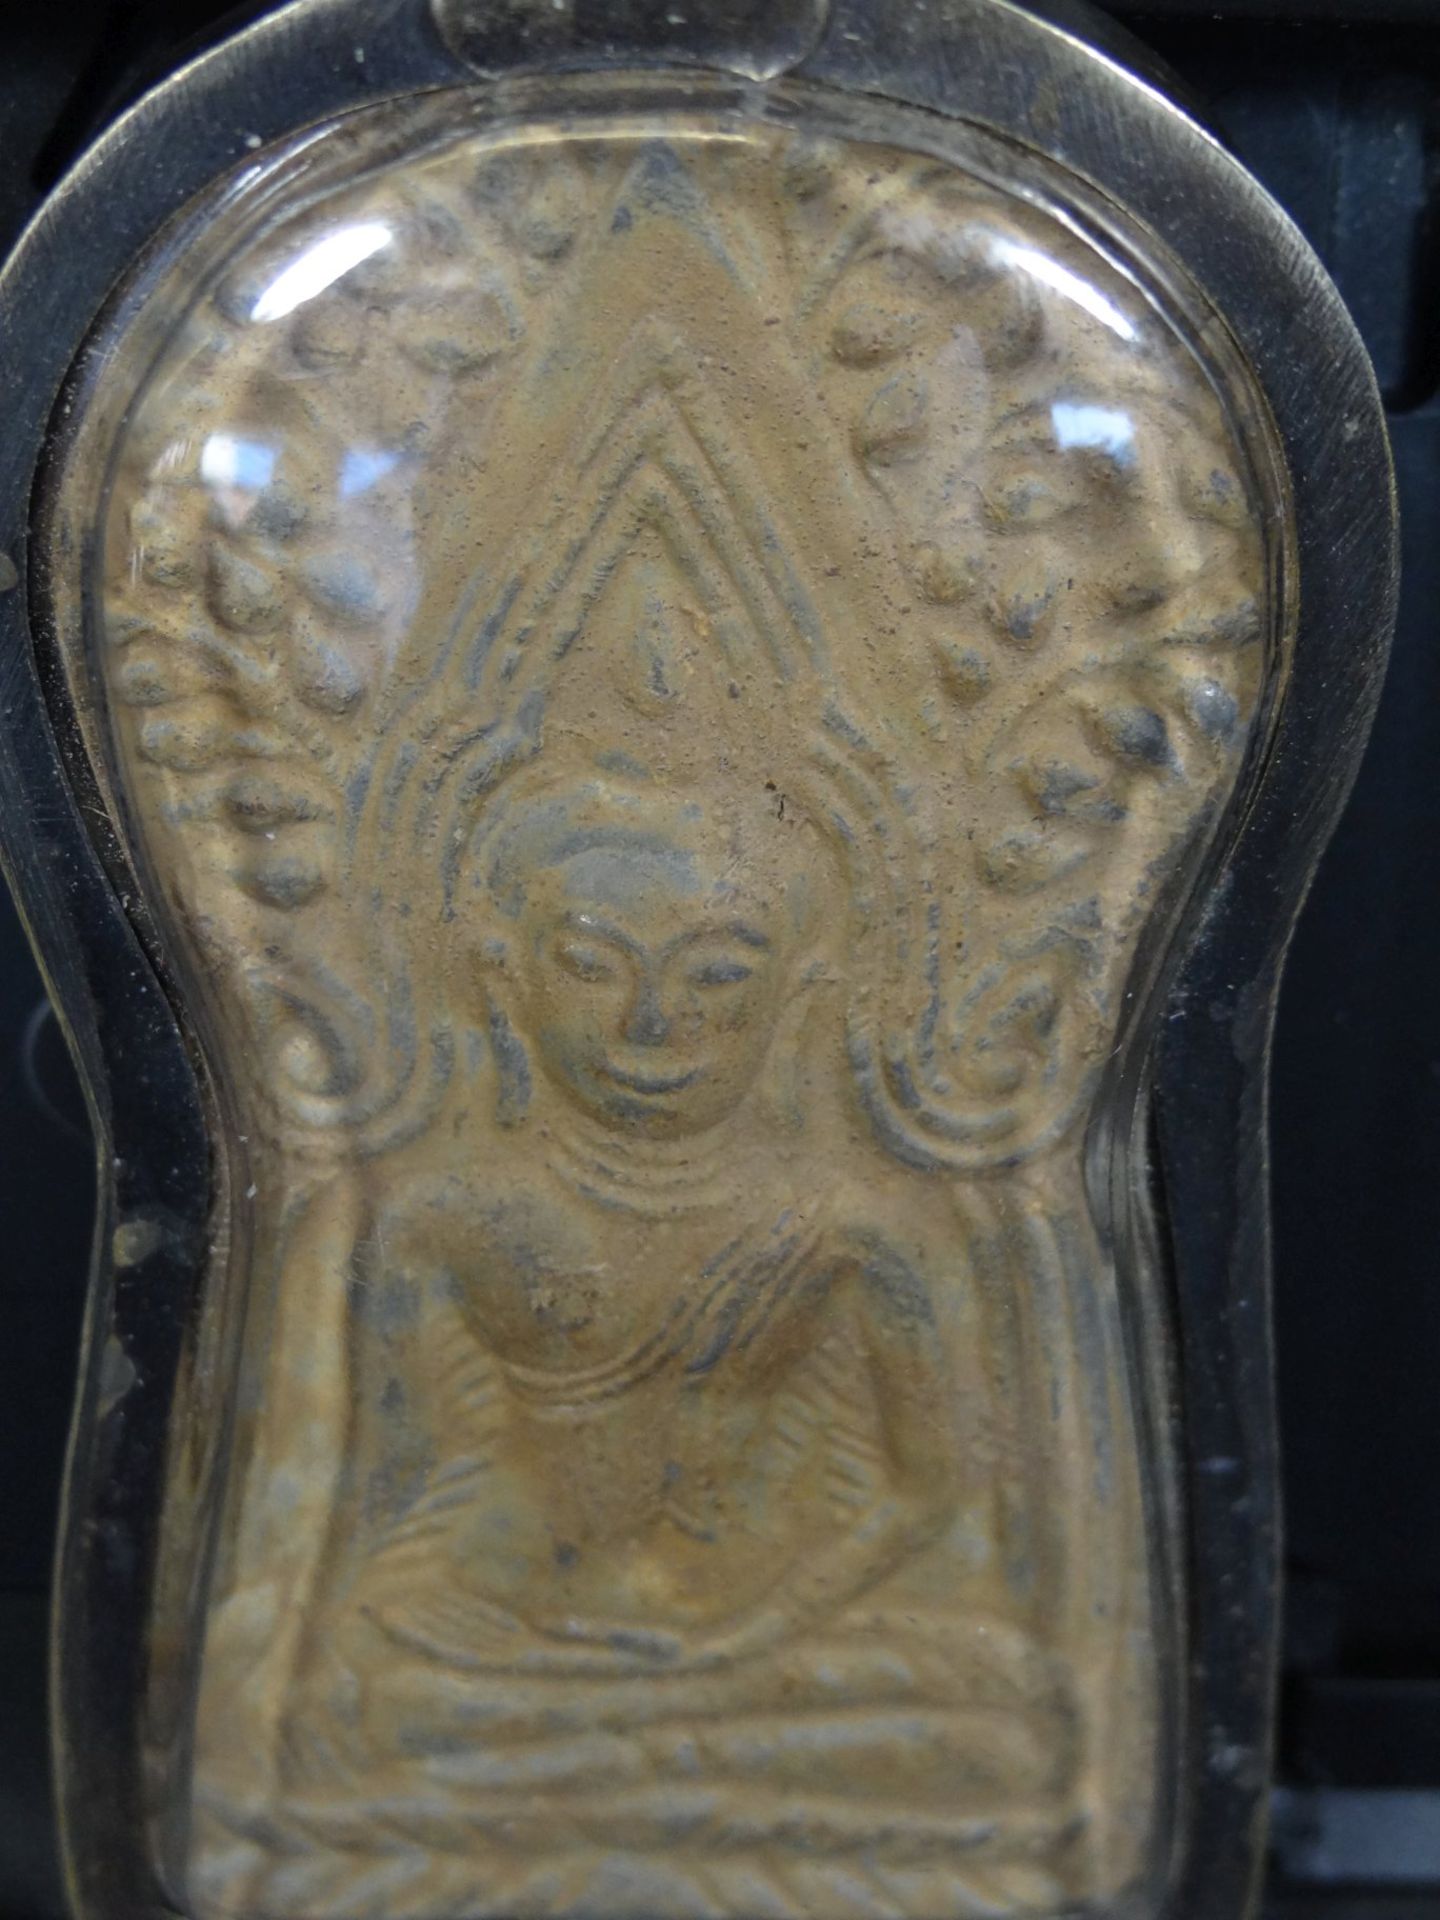 gr. Anhänger mit Buddha, versilbert, 7x4 c - Bild 2 aus 4